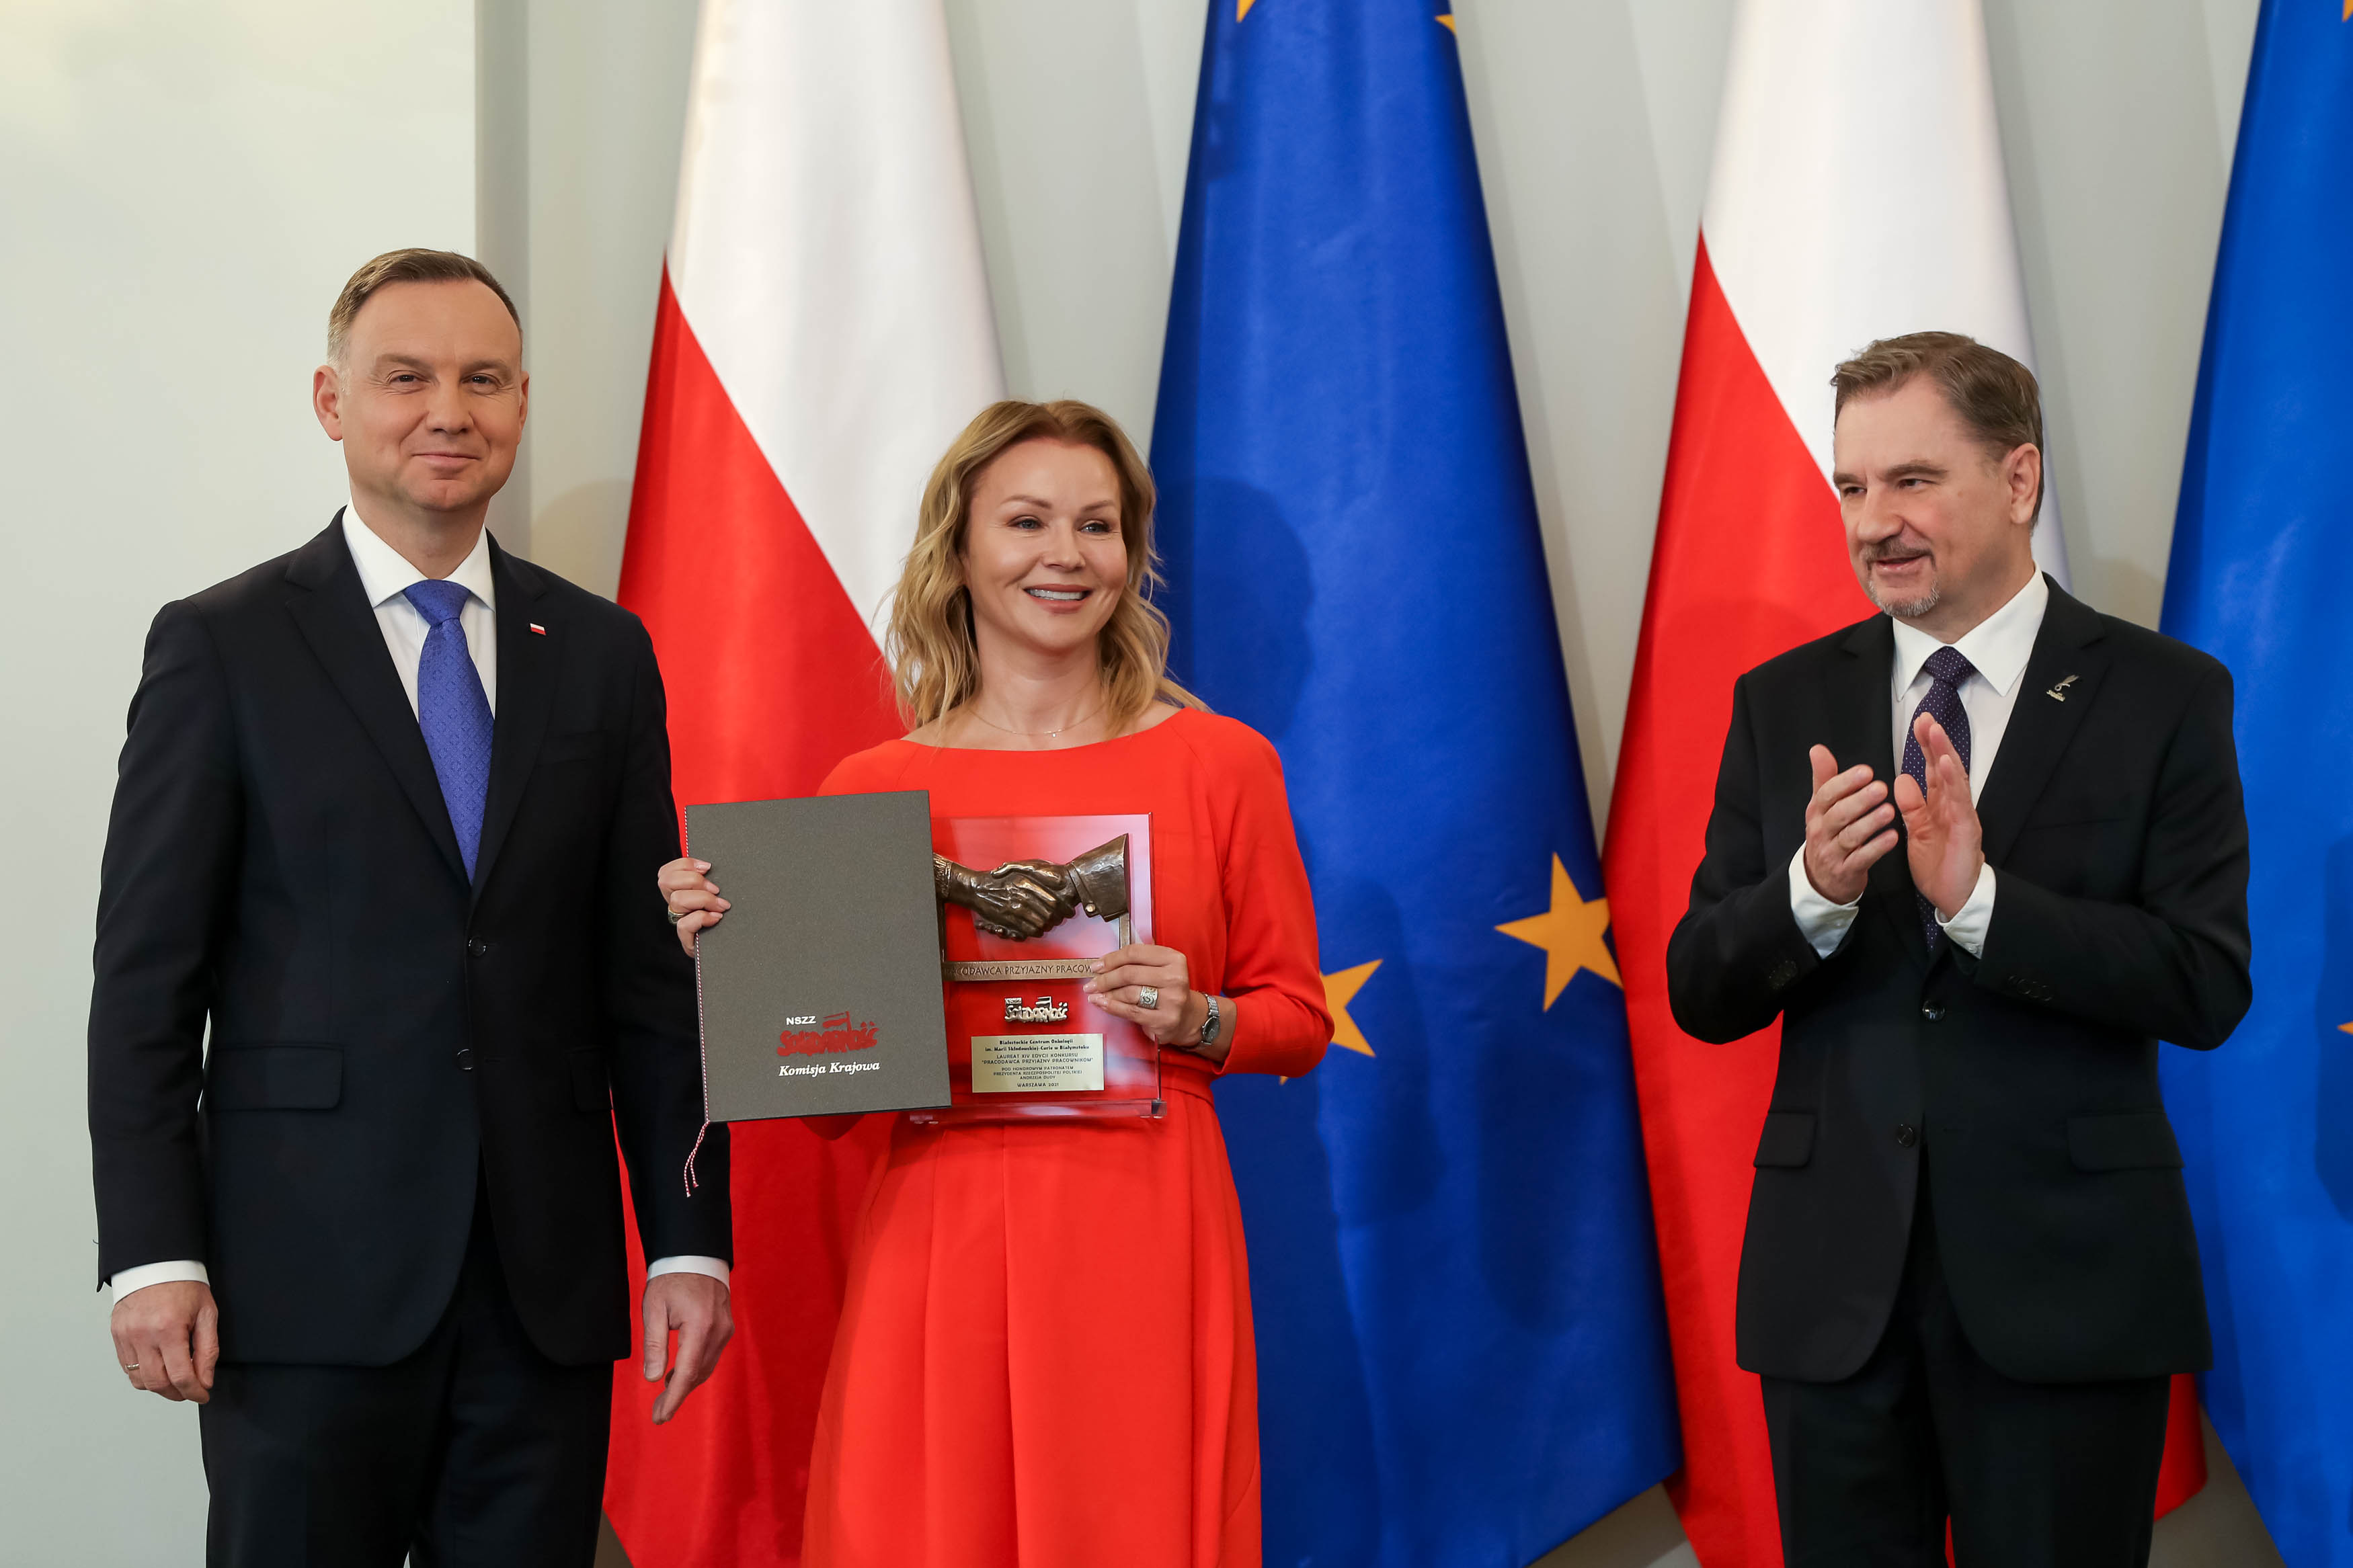 Dwóch mężczyzn w garniturach i kobieta w sukience pozują do zdjęcia na tle flag polskiej i unijnej.